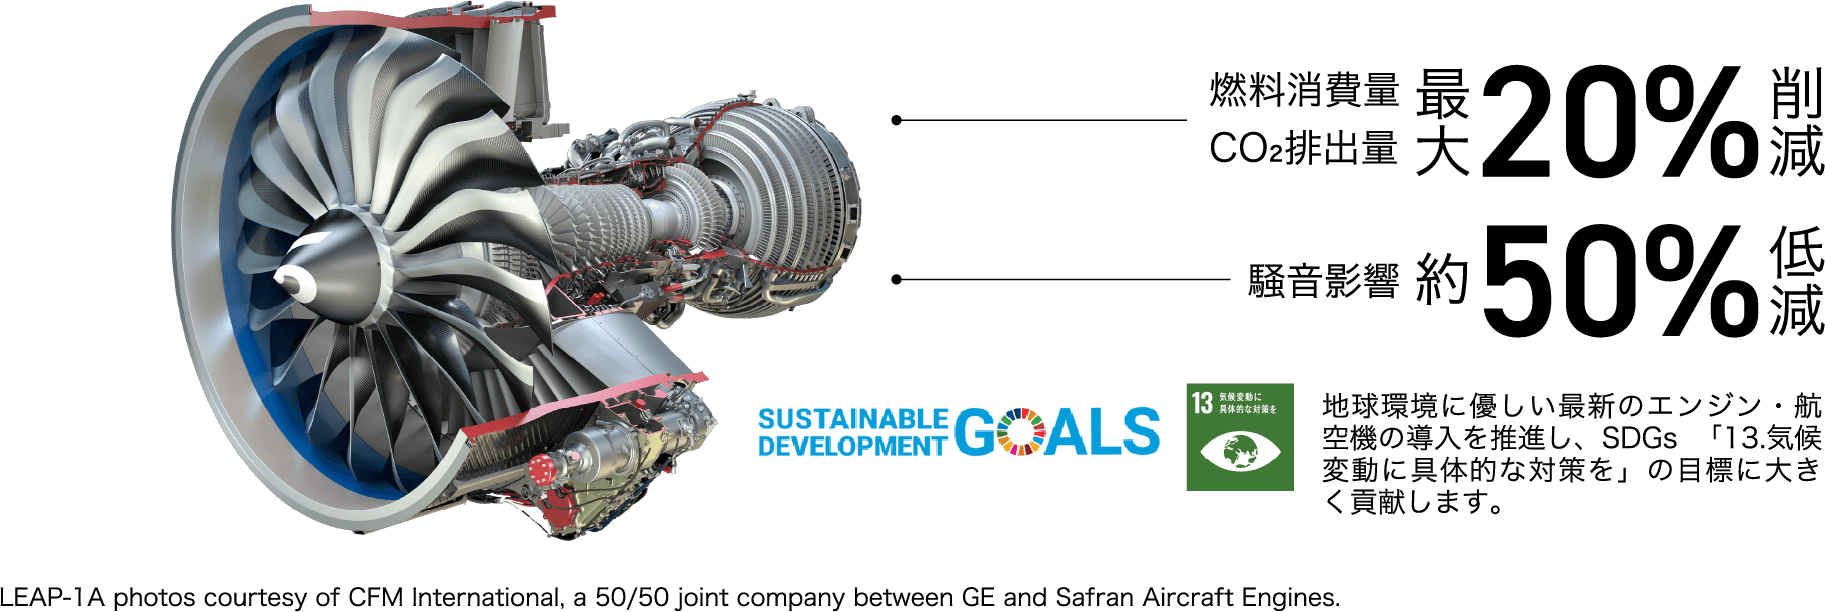 燃料消費量・CO2排出量 最大20%削減 騒音影響 約50%低減 LEAP-1A photos courtesy of CFM International, a 50/50 joint company between GE and Safran Aircraft Engines. 地球環境に優しい最新のエンジン・航空機の導入を推進し、SDGs 「13.気候変動に具体的な対策を」の目標に大きく貢献します。